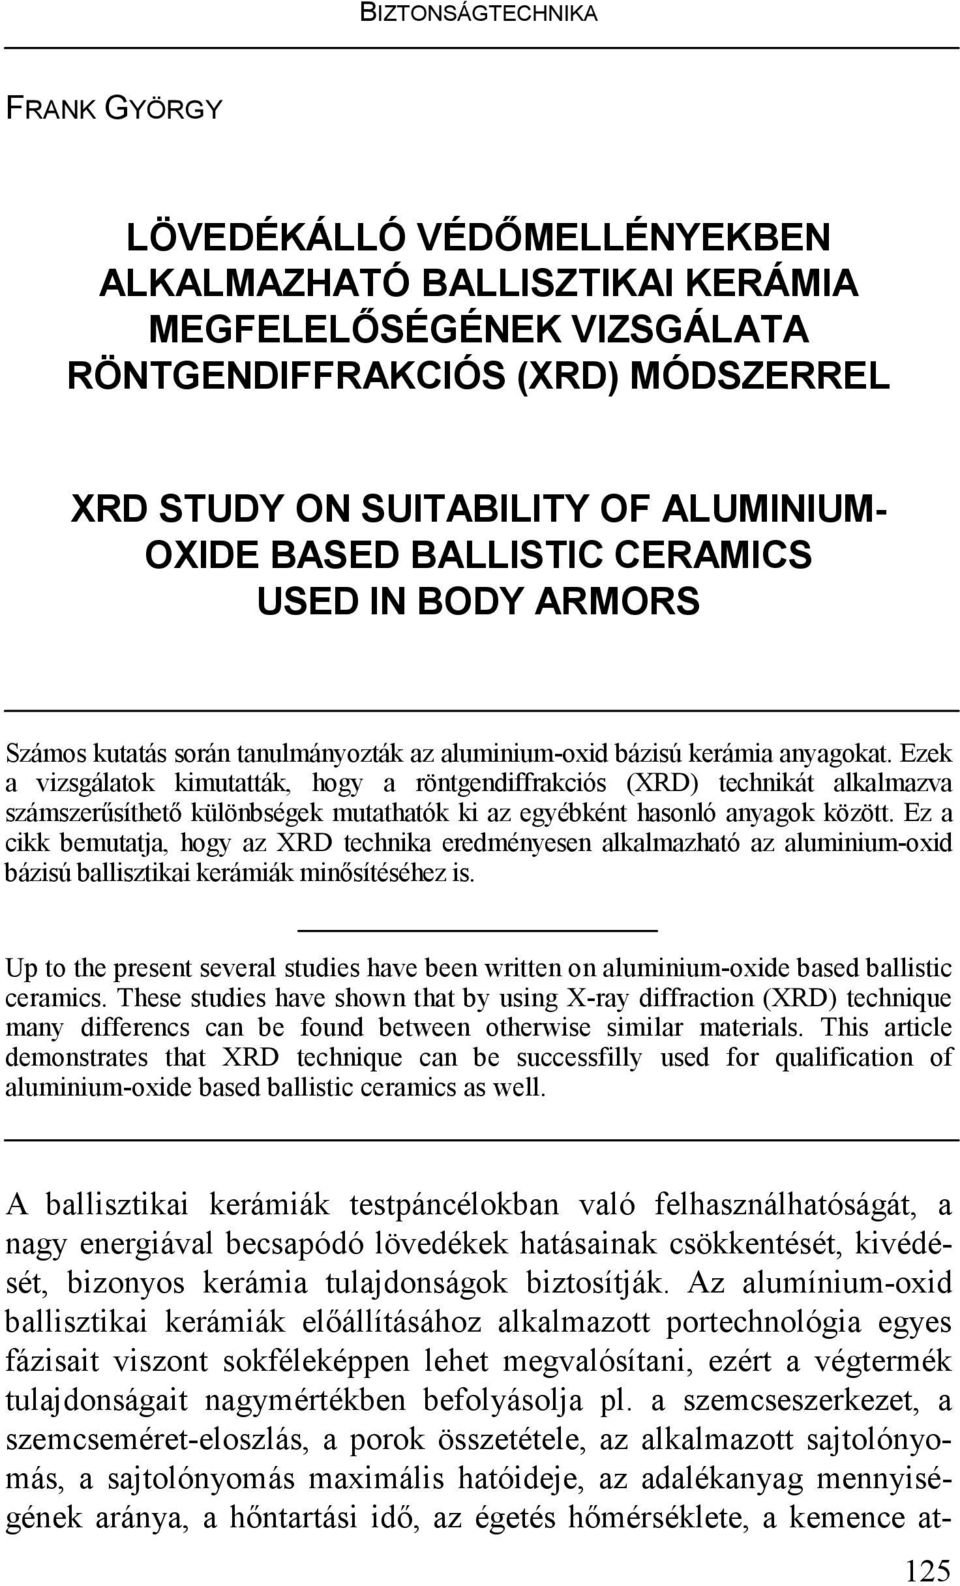 Ezek a vizsgálatok kimutatták, hogy a röntgendiffrakciós (XRD) technikát alkalmazva számszerősíthetı különbségek mutathatók ki az egyébként hasonló anyagok között.